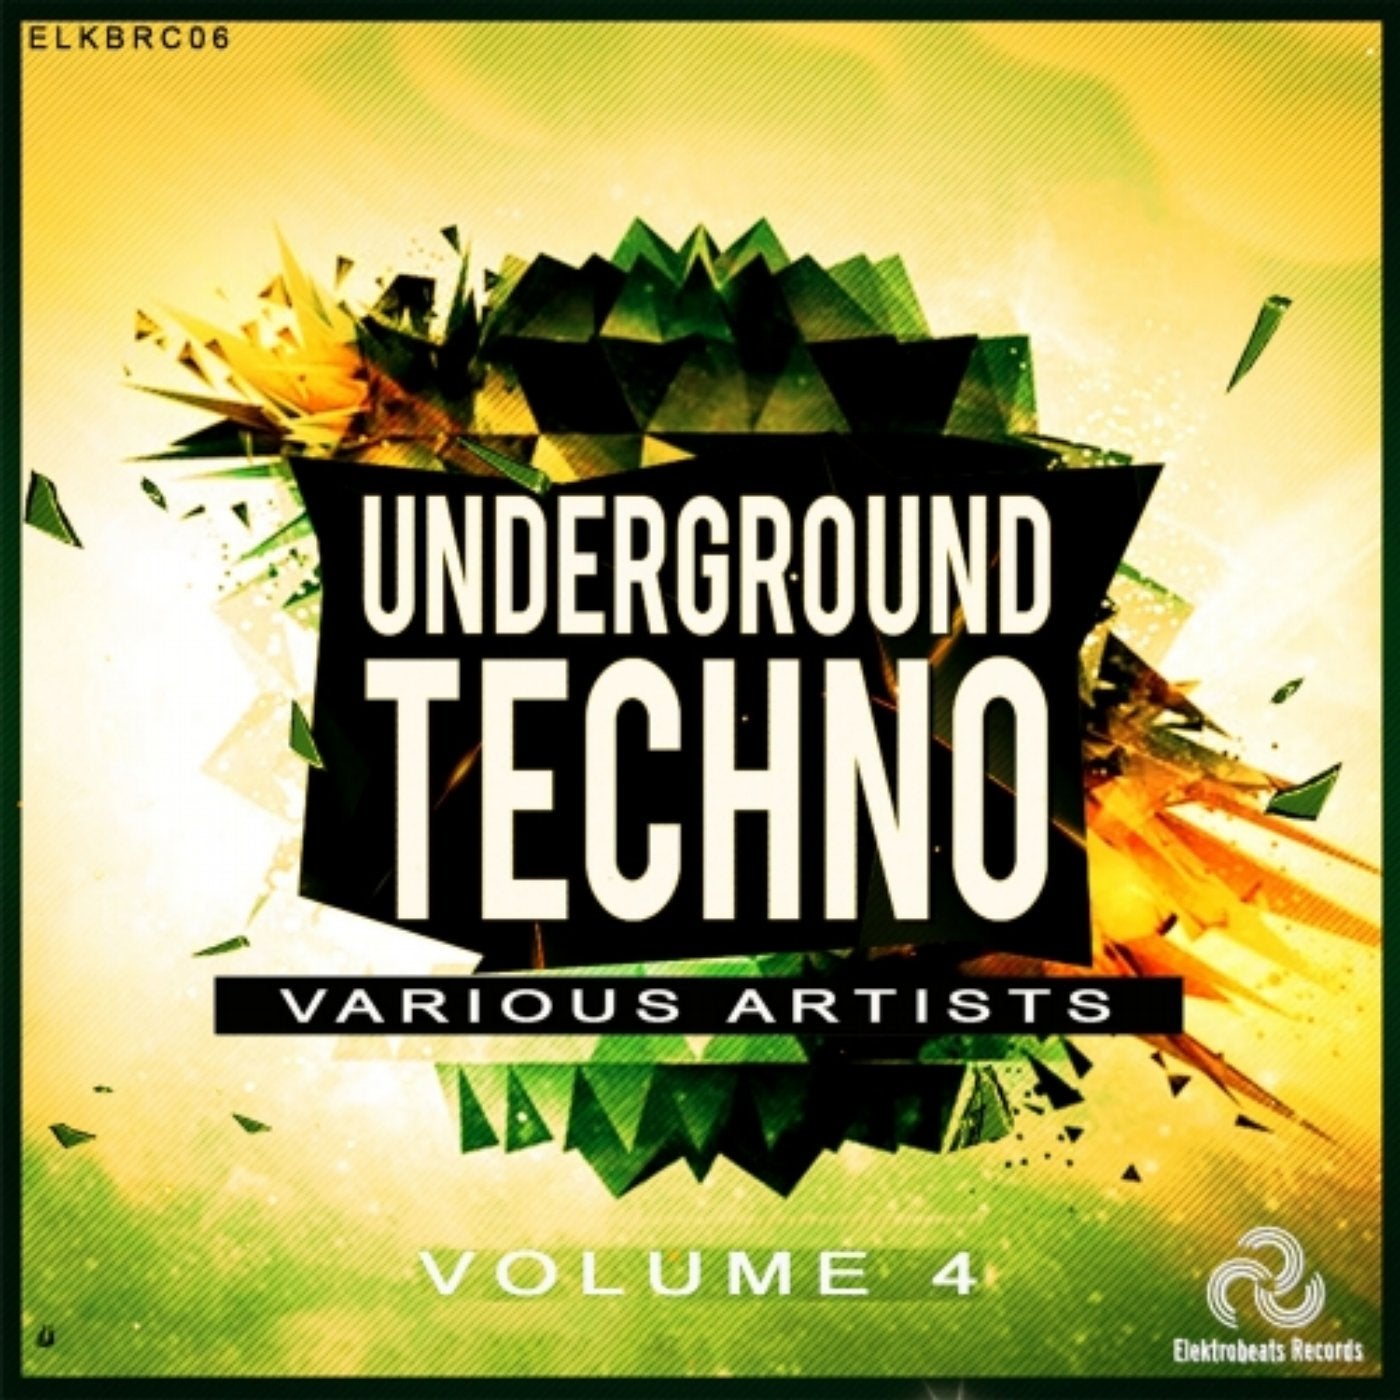 Underground Techno Vol. 4